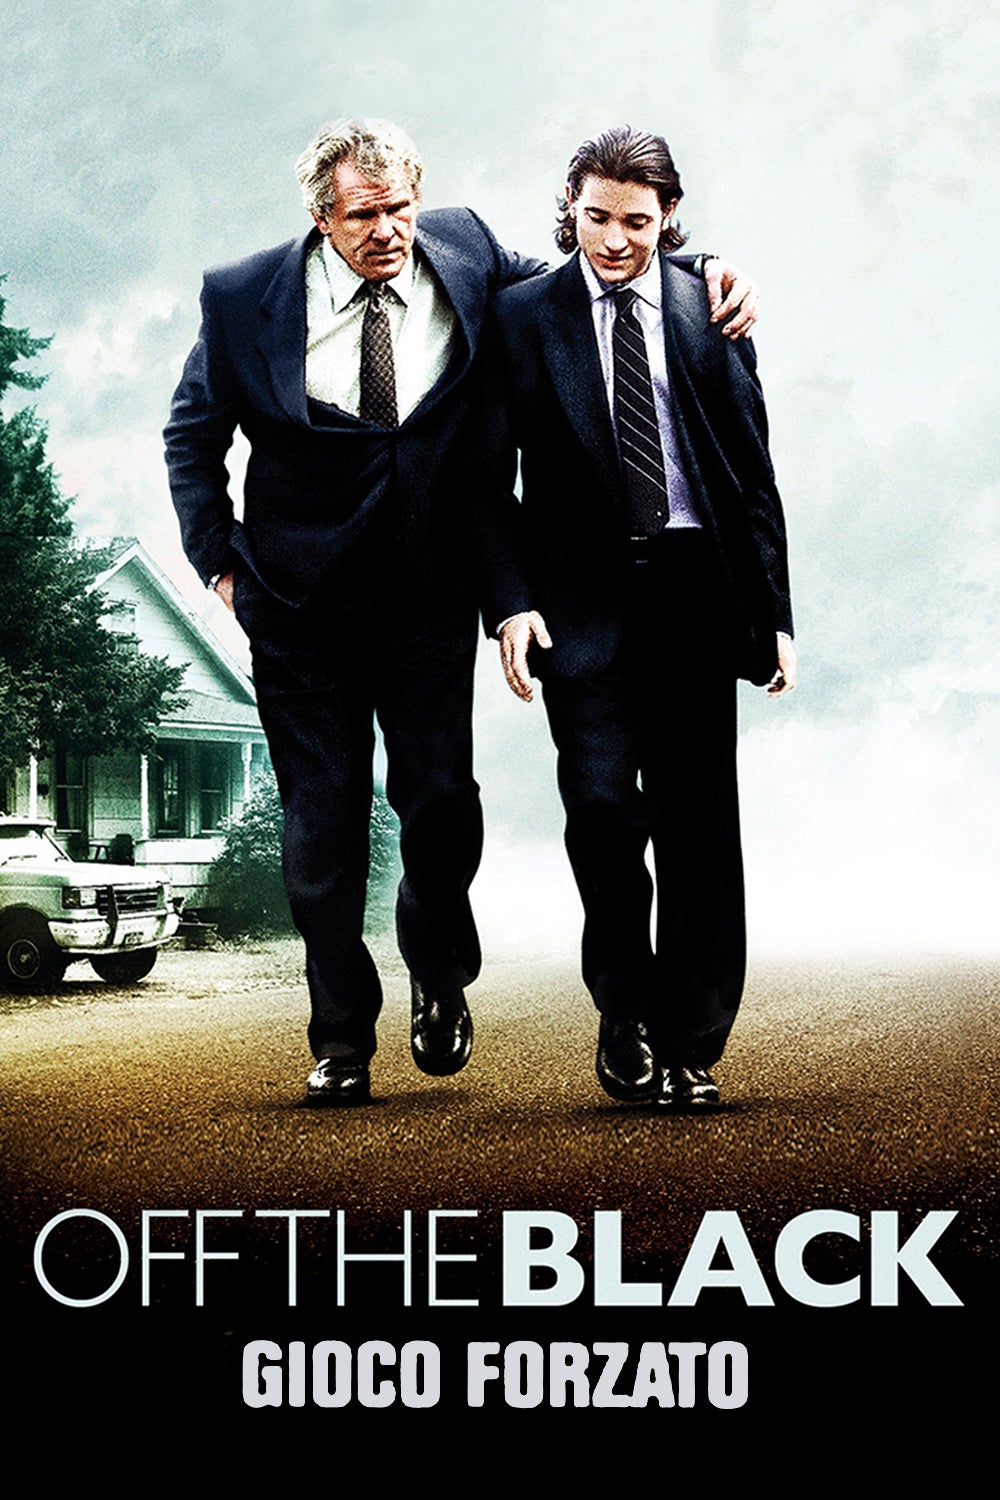 Off the Black – Gioco forzato (2006)